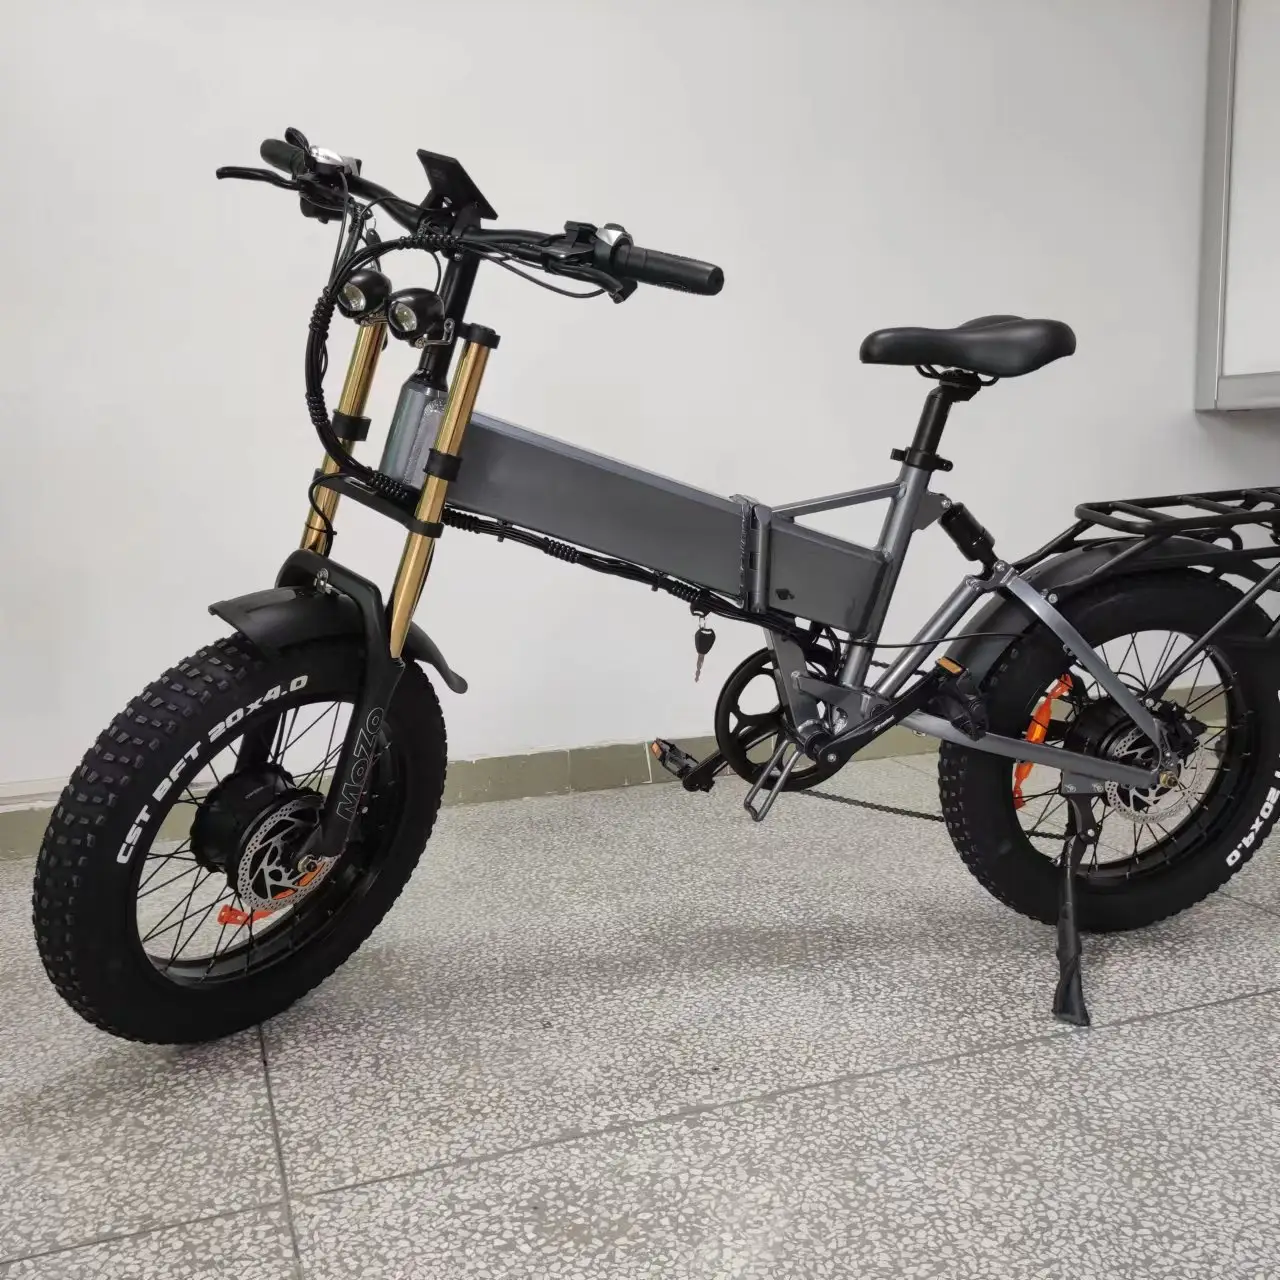 Double motor 20"x4.0 wheel 48V/ 21Ah E-bike 750W*2 electric bicycle high power folding fat tire electric bike